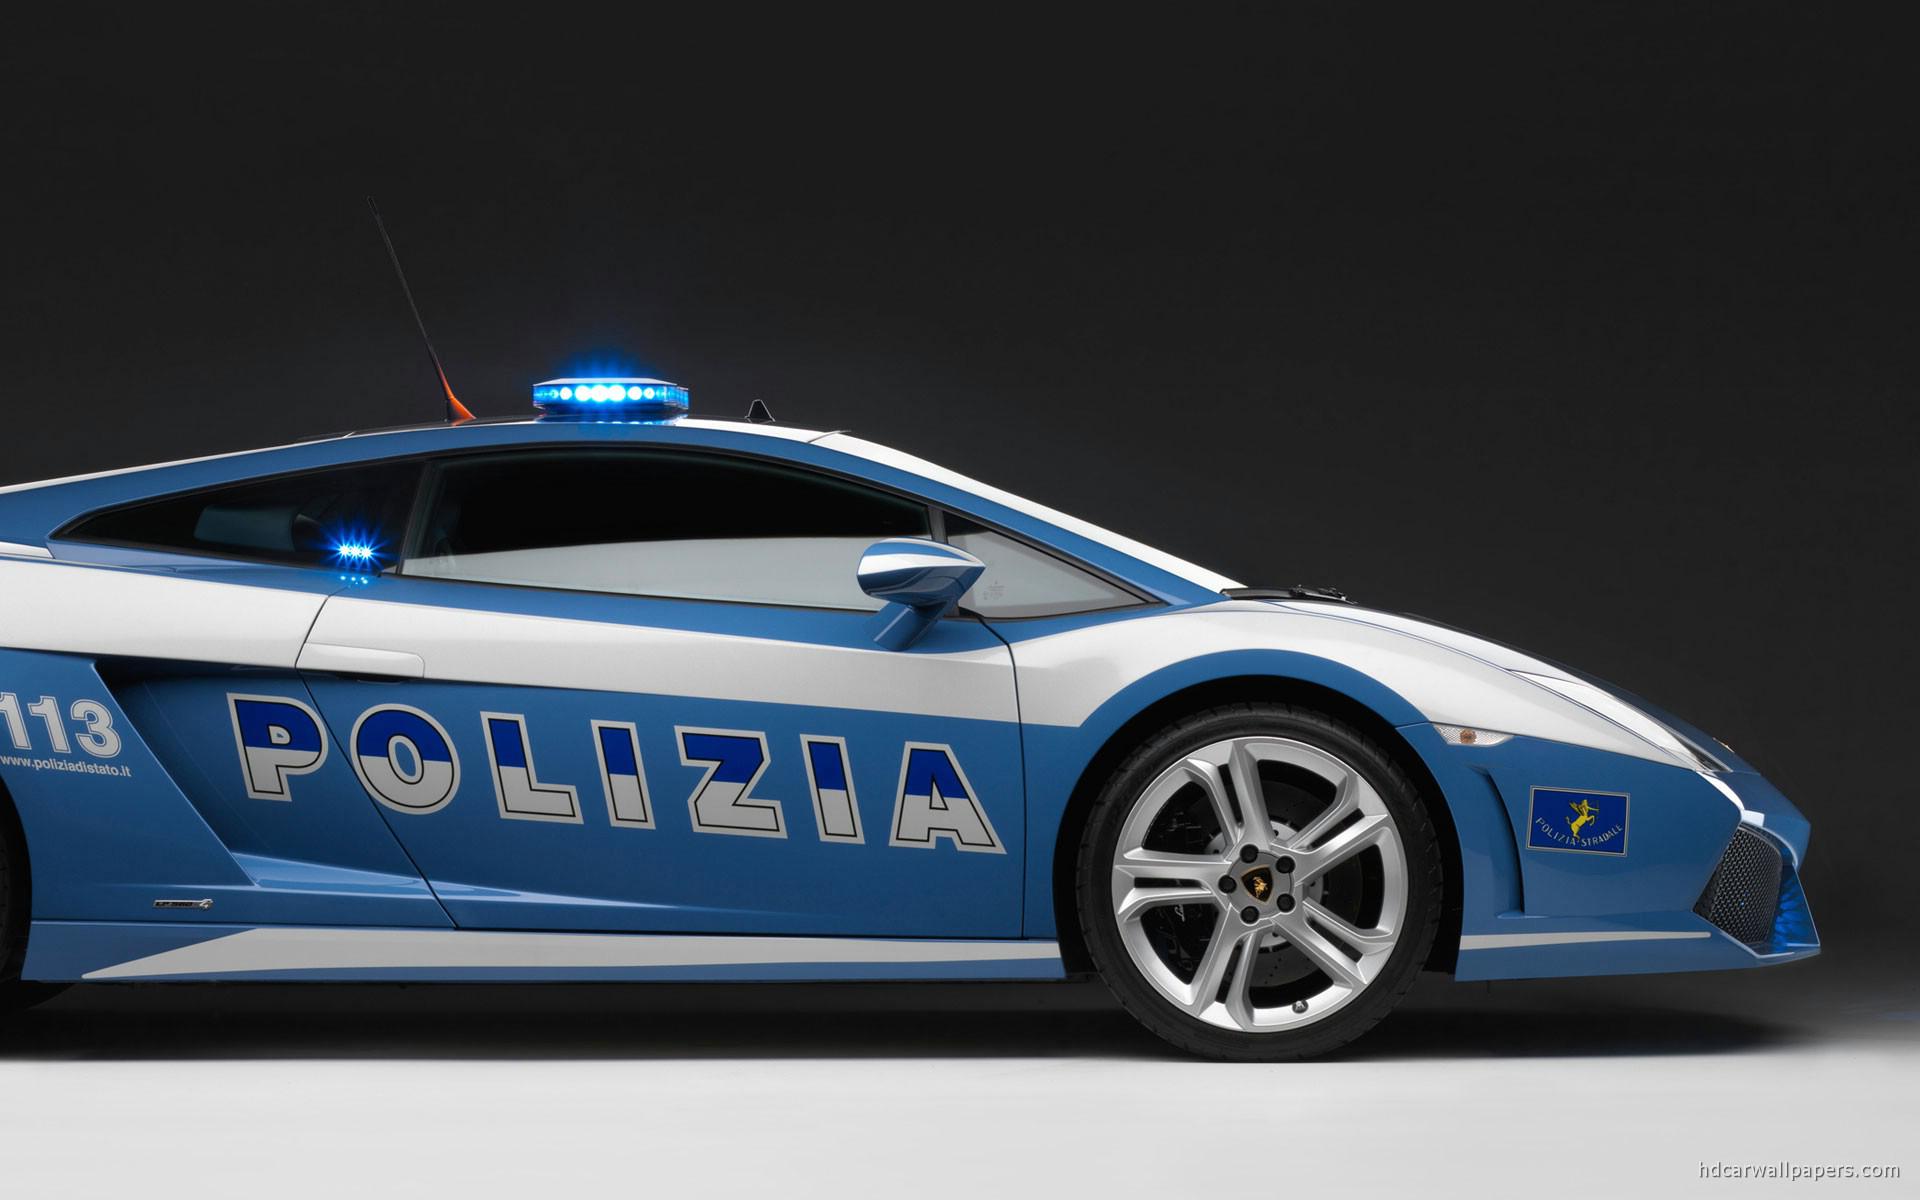 Download wallpaper for 240x320 resolution | 2009 Lamborghini Police Car